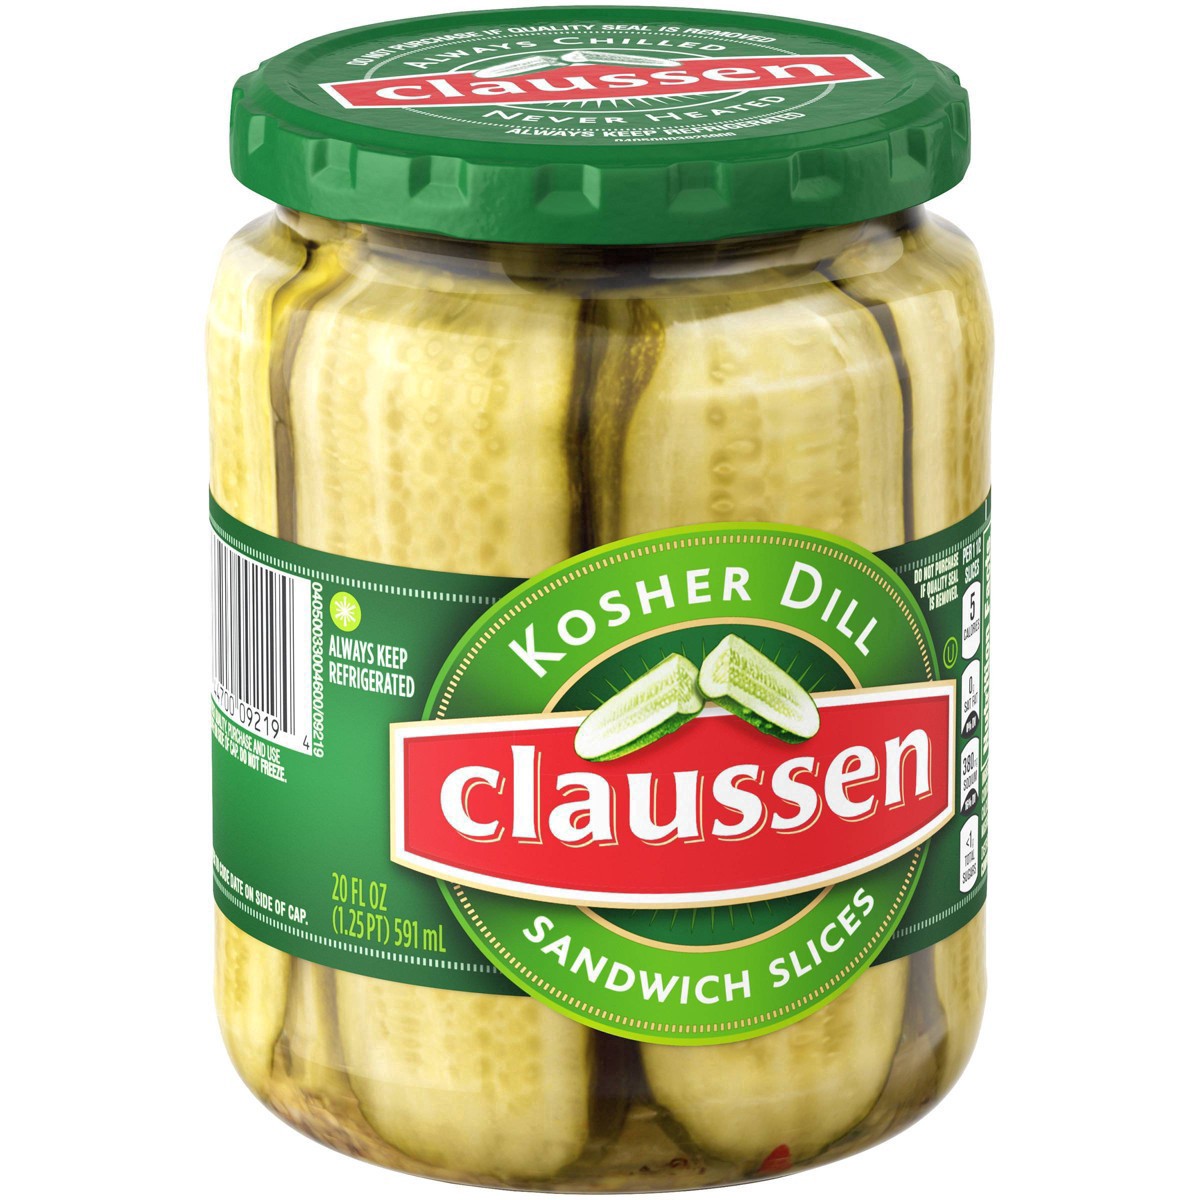 slide 19 of 144, Claussen Kosher Dill Pickle Sandwich Slices, 20 fl. oz. Jar, 20 fl oz